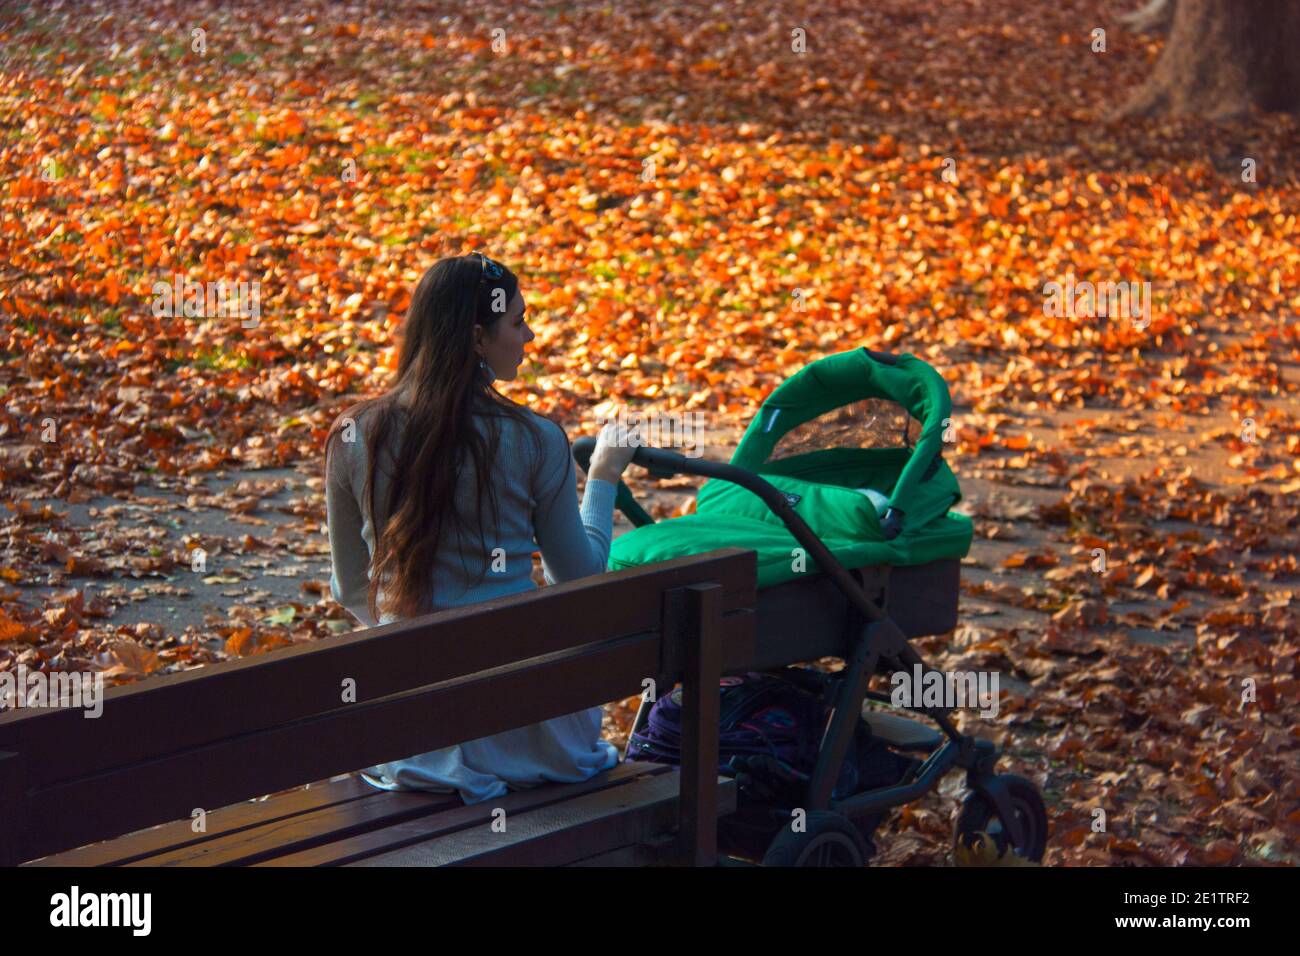 Vue arrière d'une femme qui s'occupe d'un bébé dans une poussette verte le beau jour d'automne, mère assis dehors sur un banc de parc en bois Banque D'Images